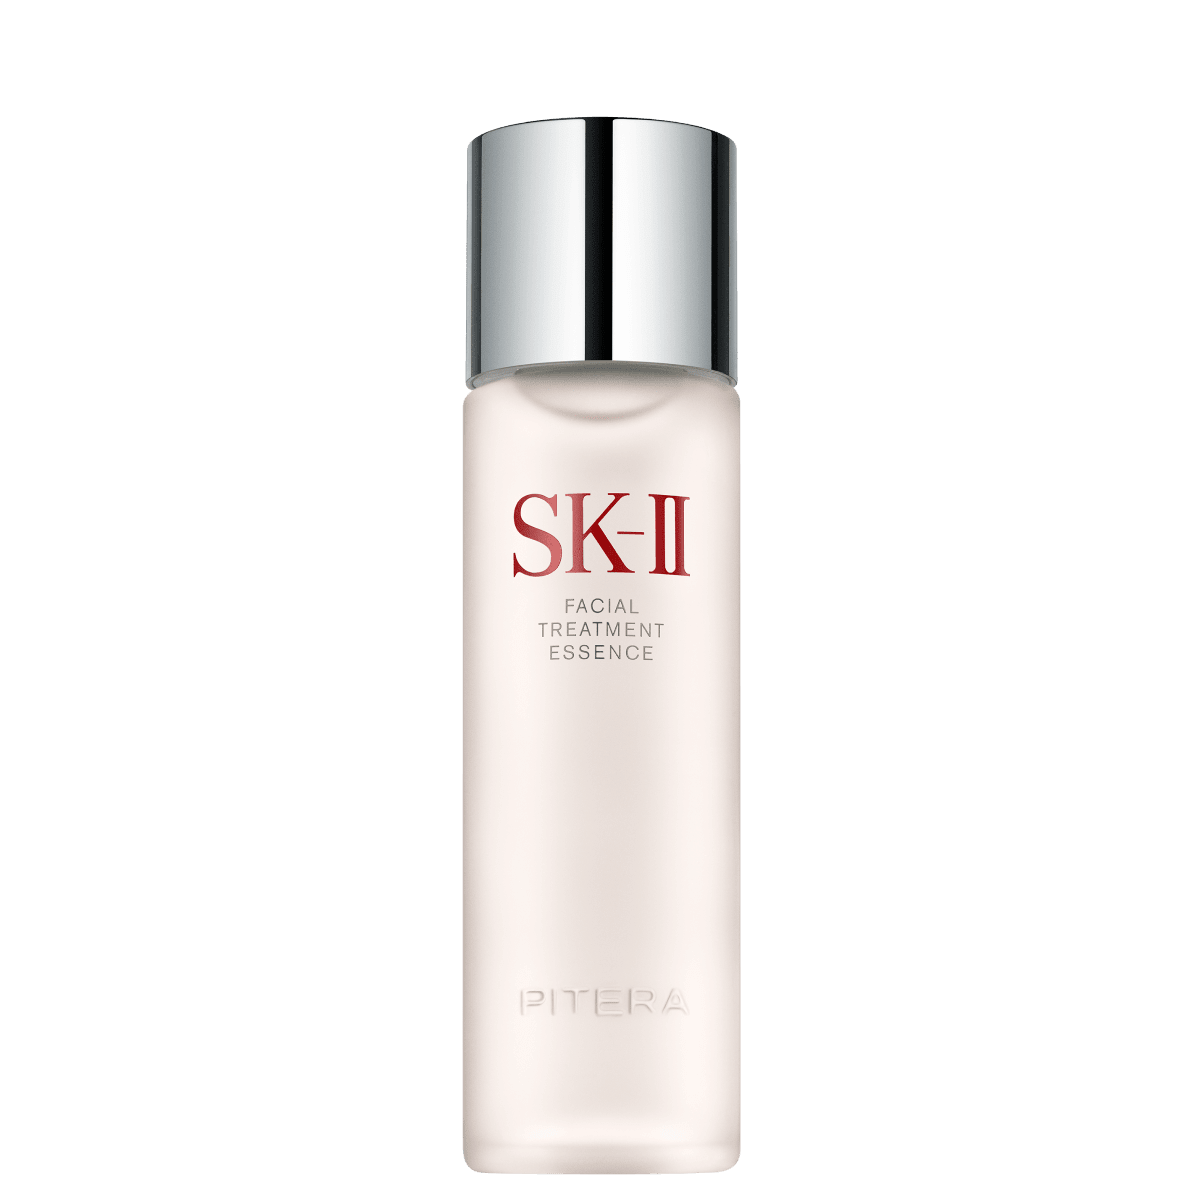 SK-II 肌膚緊緻保養品：提升肌膚彈性，減緩老化現象| SK-II 台灣